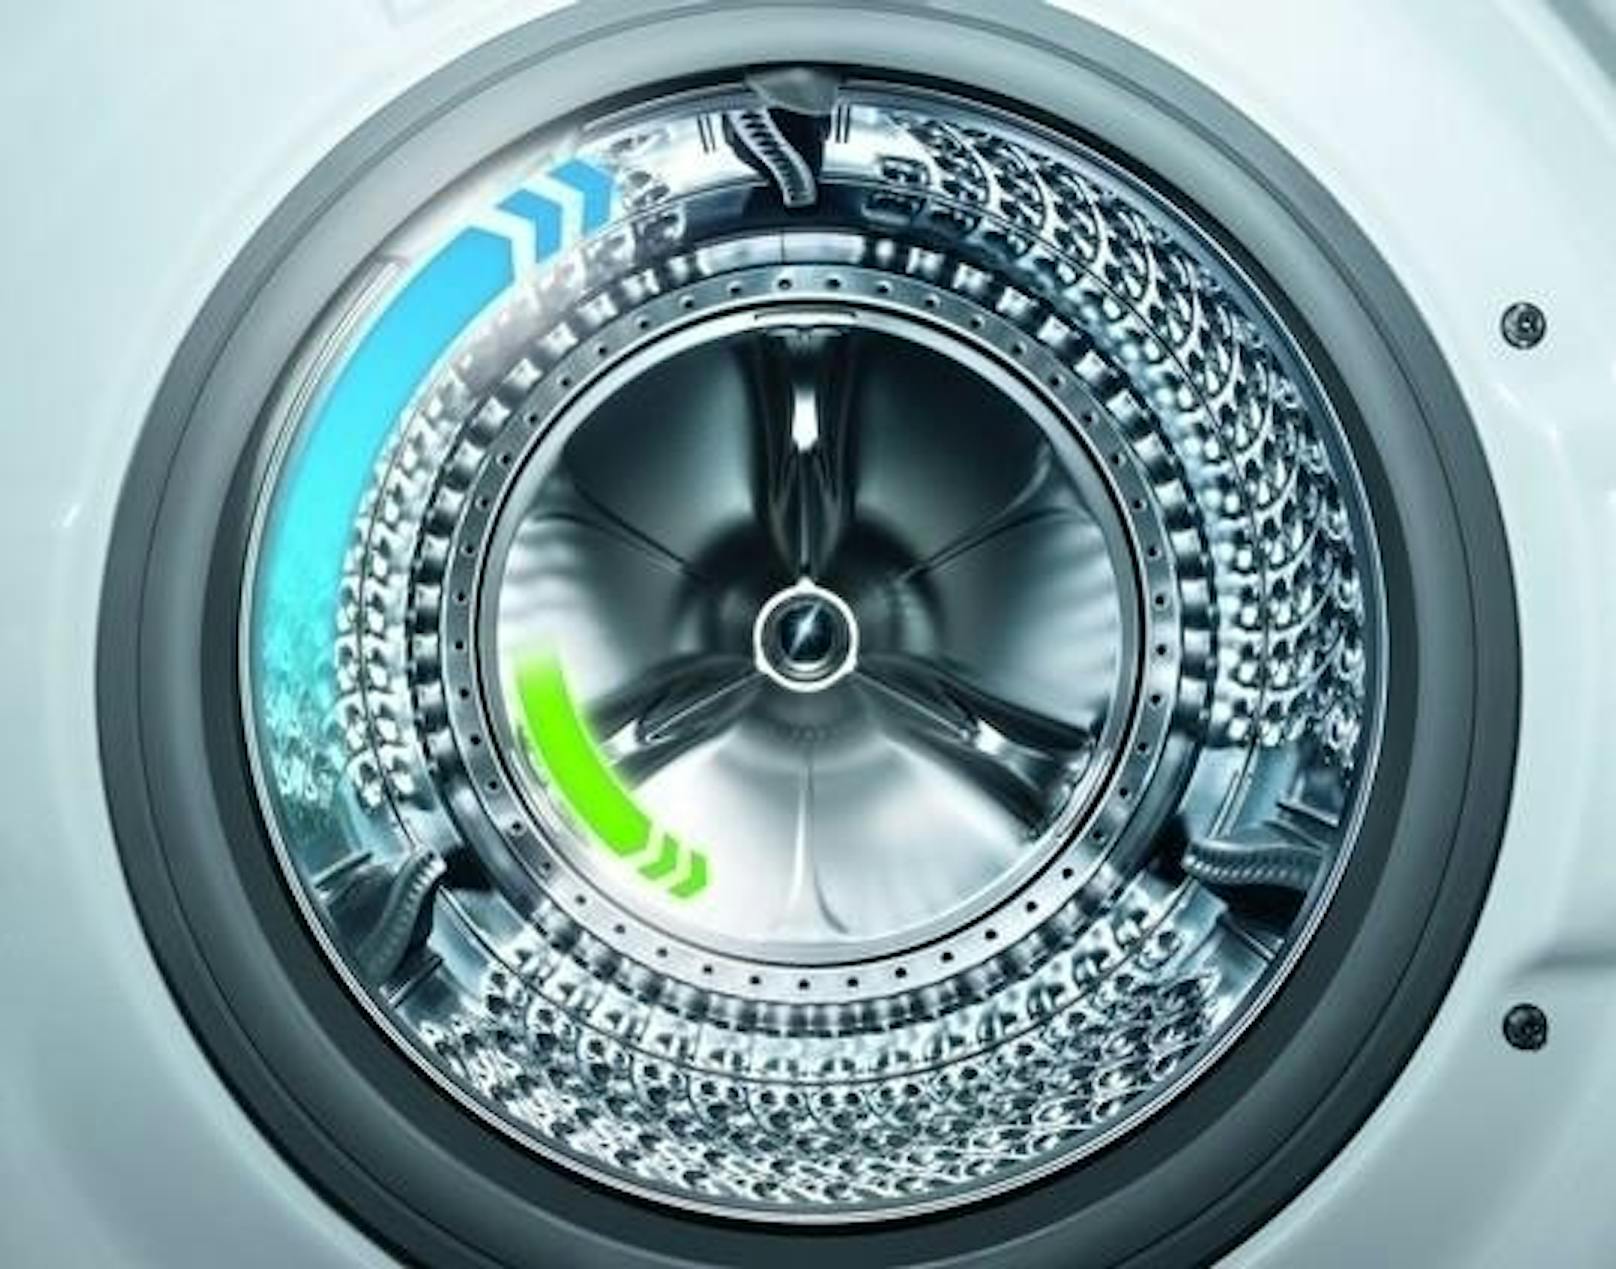 Samsung präsentiert Waschmaschinen mit QuickDrive-Technologie: Bis zu 5 kg Wäsche in nur 39 Minuten; AddWash-Tür, WiFi-Steuerung und automatische Waschmitteldosierung inklusive. Die Samsung QuickDrive Waschmaschine ist mit einer besonderen Rückwand ausgestattet, die sich unabhängig von der Trommel dreht und somit eine multidimensionale Wäschebewegung erzeugt. Ohne Kompromisse in der Sauberkeit wird die Waschzeit bei gleichbleibender Waschleistung bis auf die Hälfte reduziert. Einige Modelle des neuen QuickDrive Line-ups sind bereits in Österreich erhältlich.